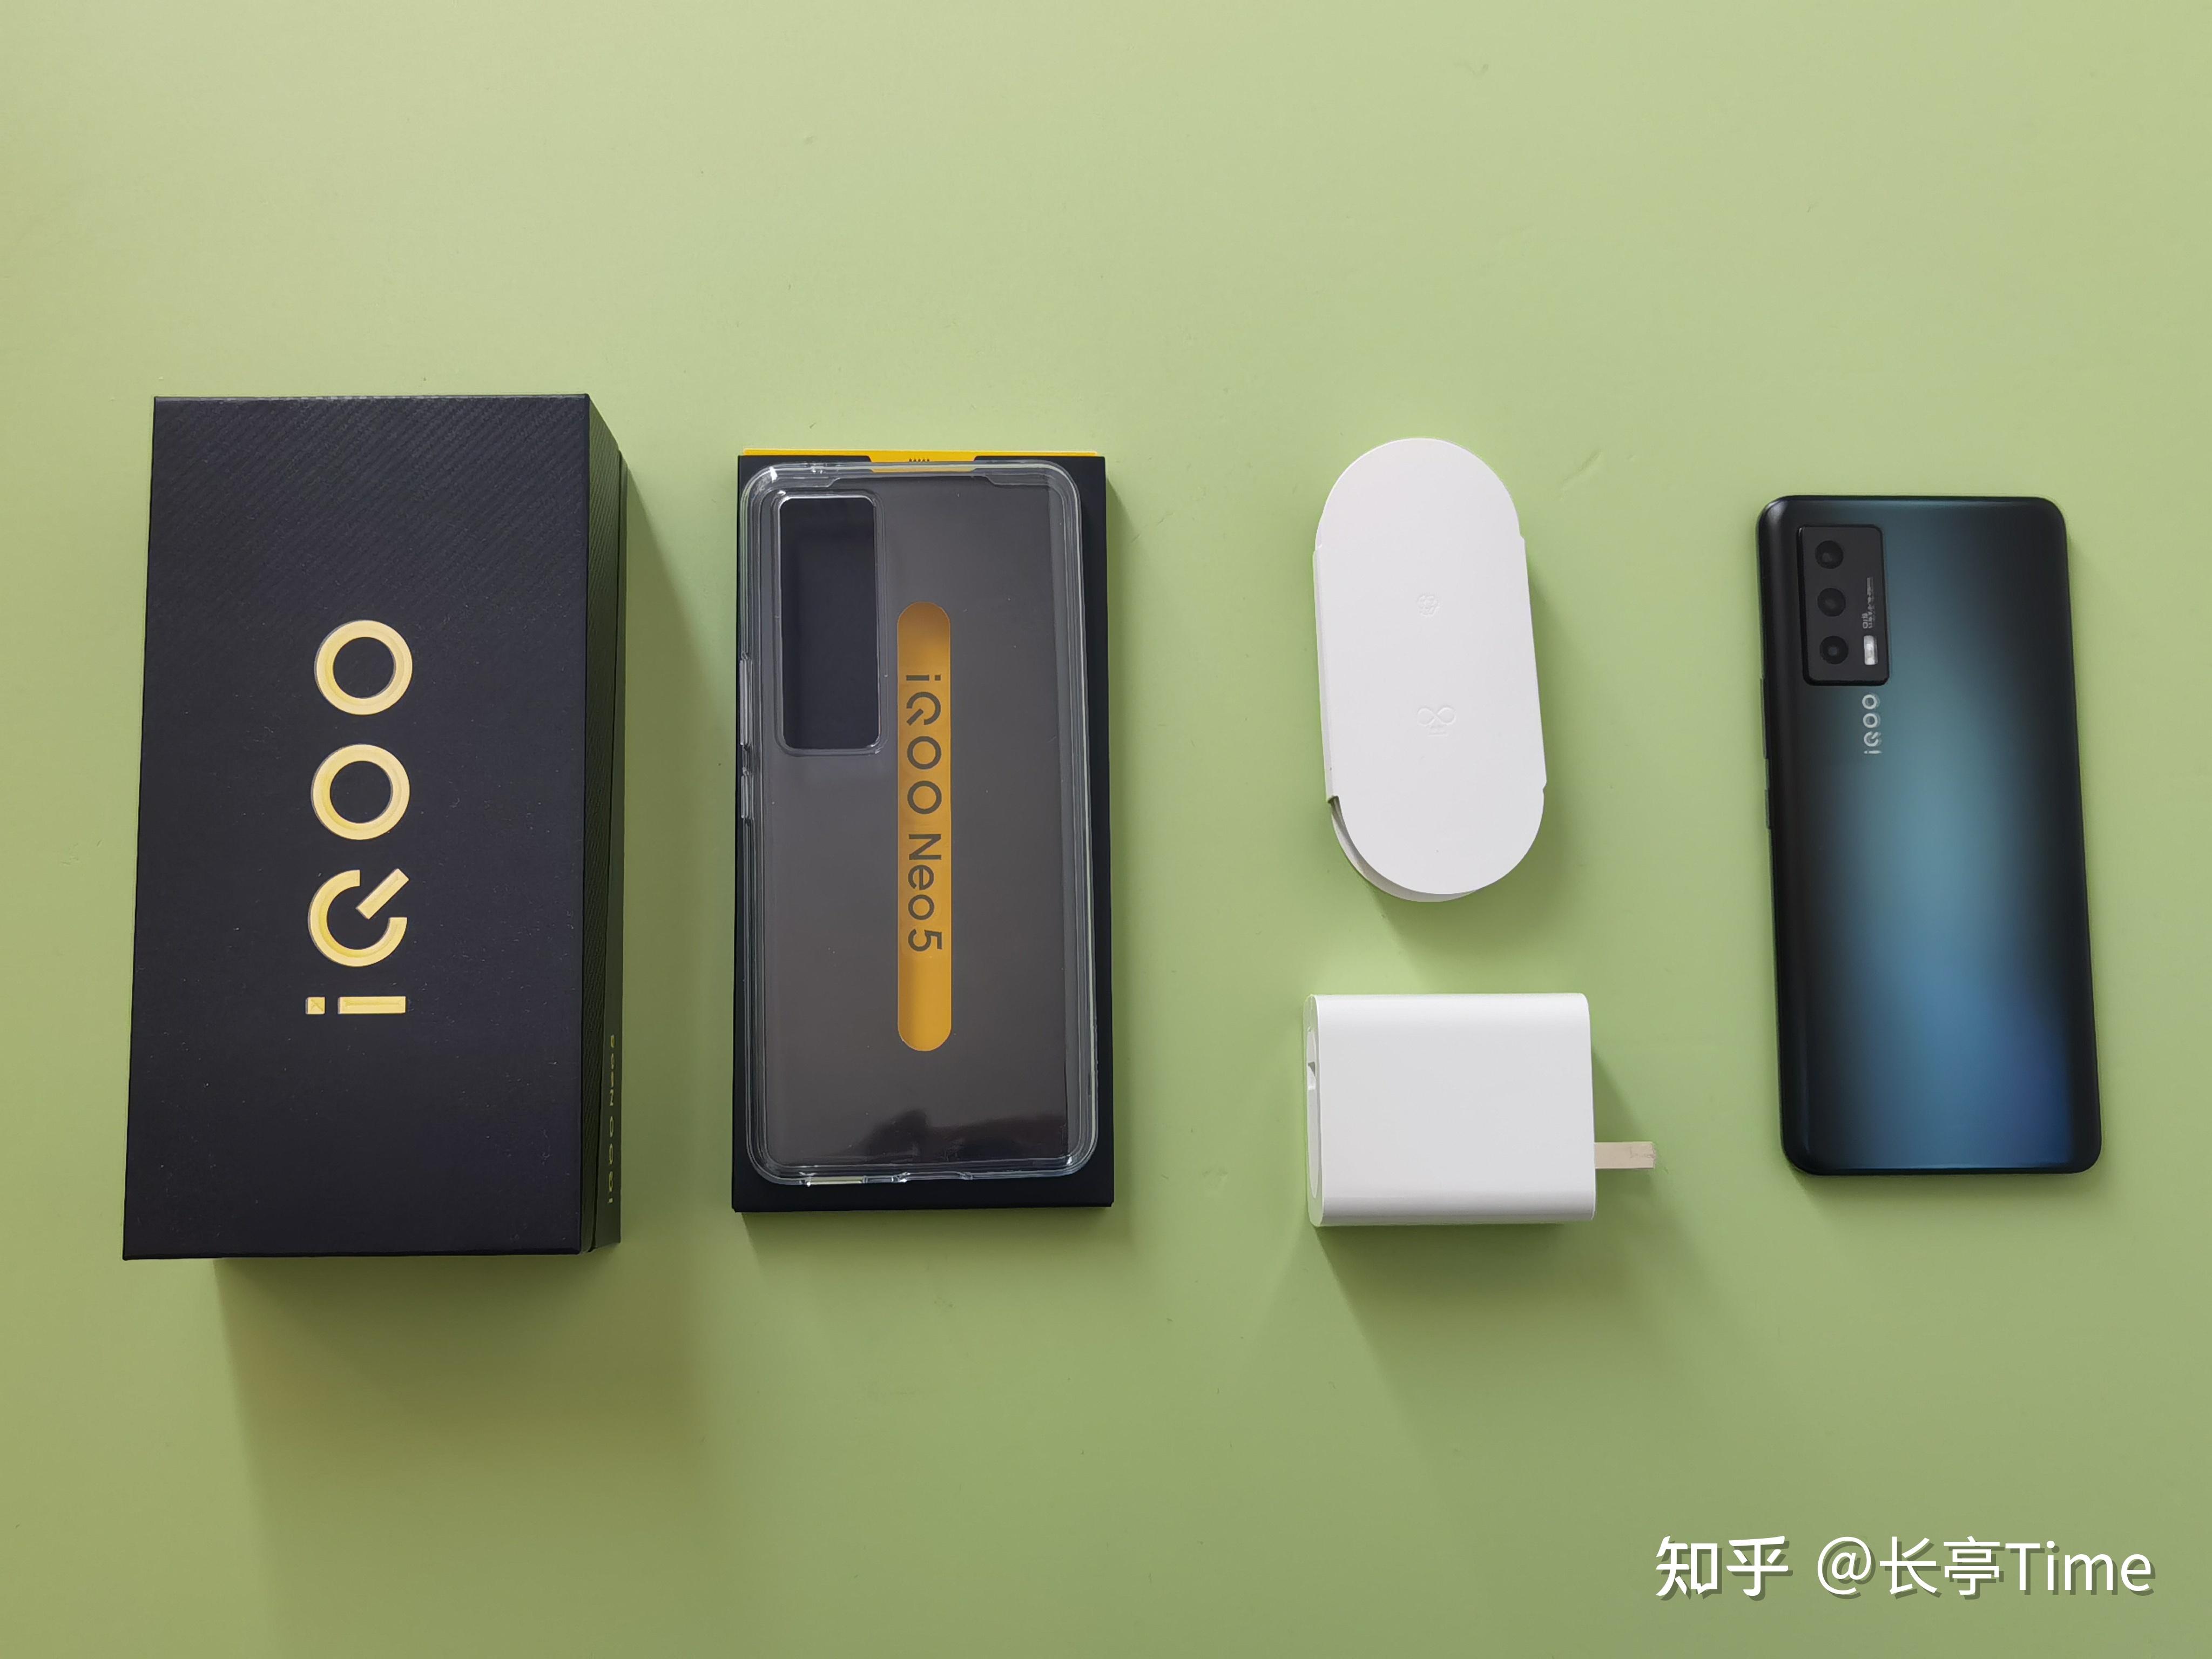 1,开箱包装盒内有iqoo neo5手机本体,透明手机壳,说明书,取卡针,66w